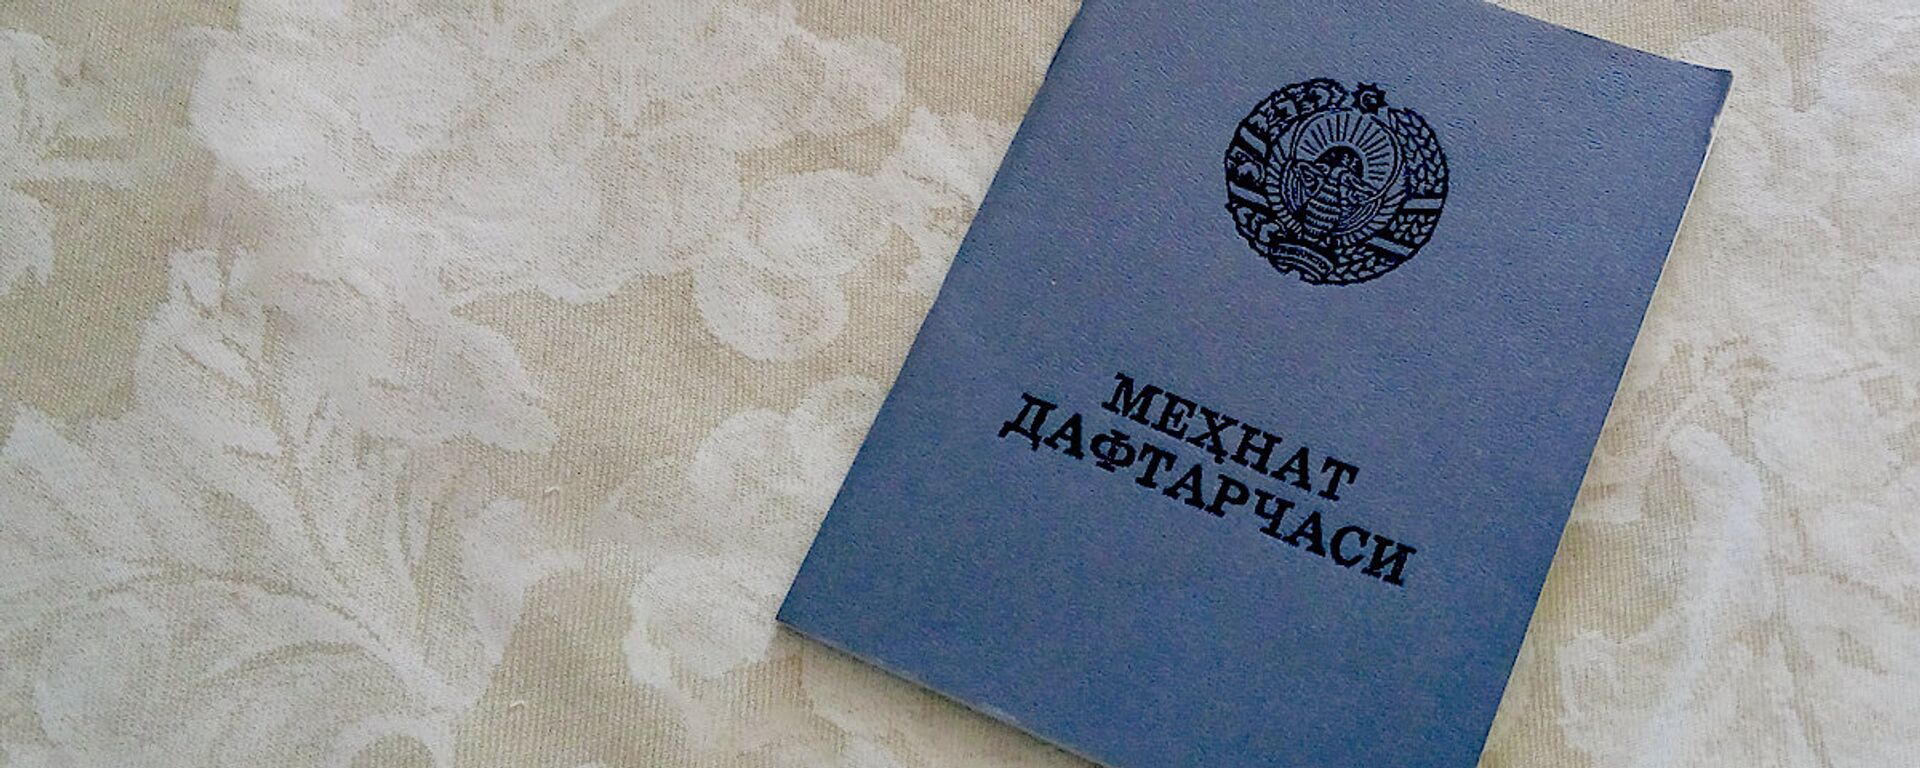 Трудовая книжка - Sputnik Узбекистан, 1920, 03.08.2021